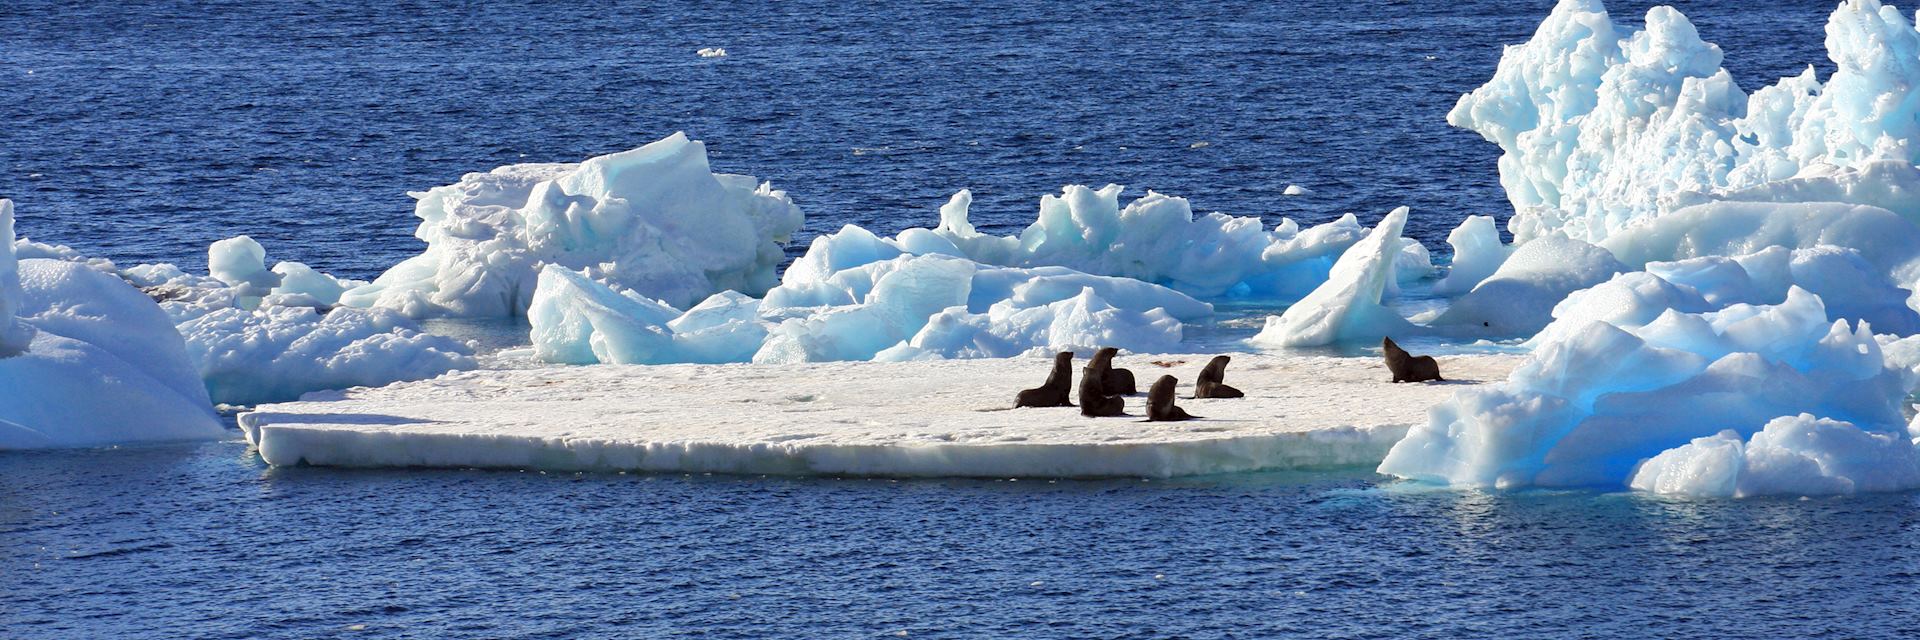 Fur seals on an ice flow, Antarctica